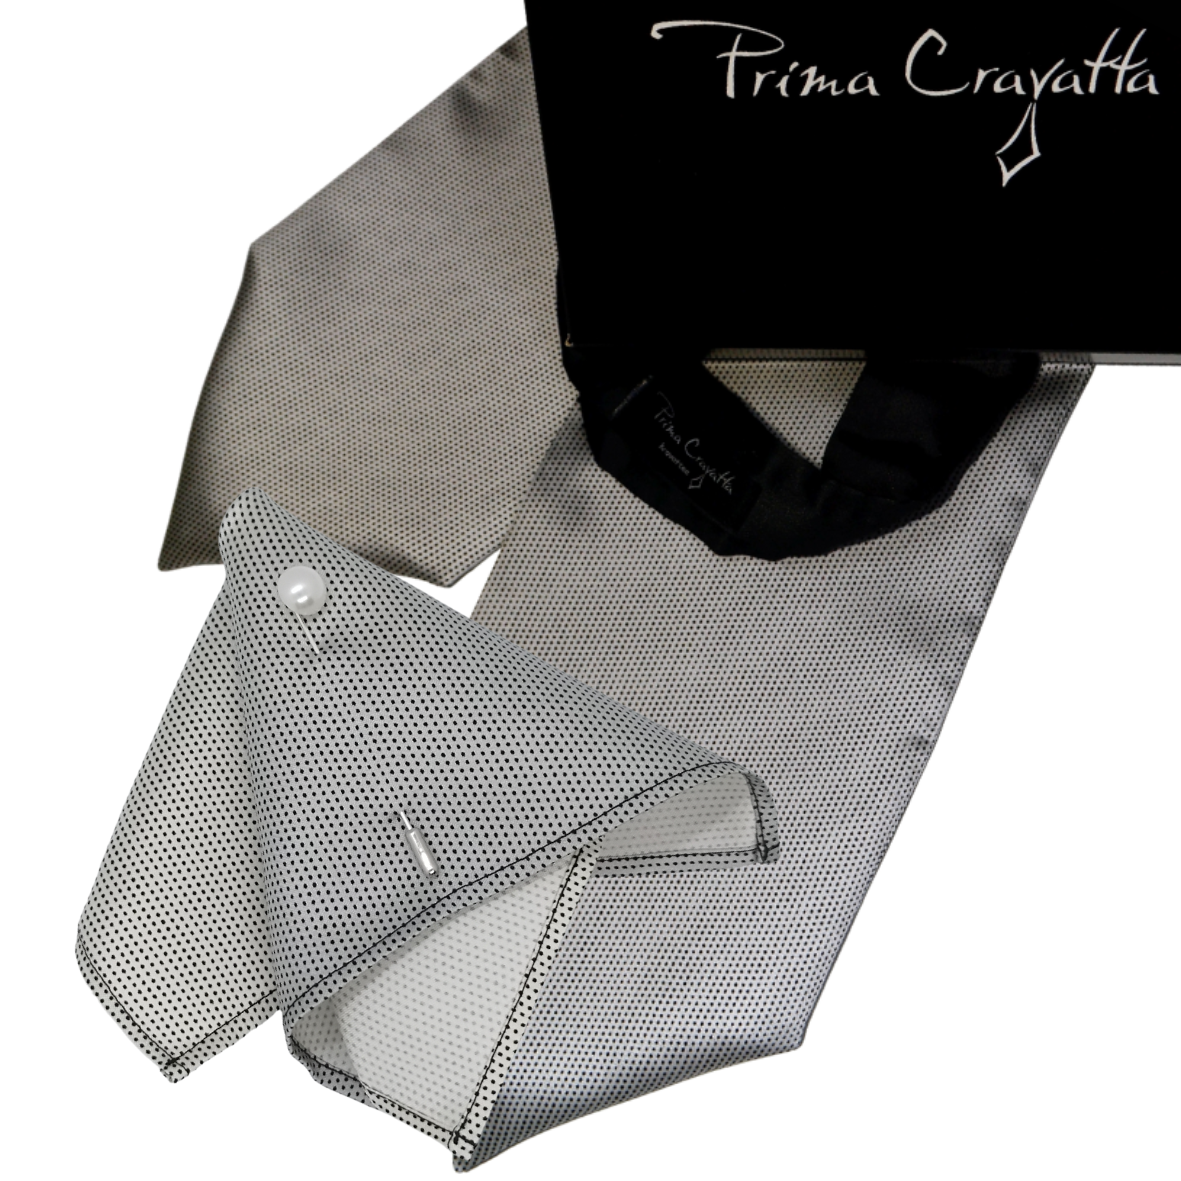 Prima Cravatta klassikaline pikk Festive sarja kuuluv siidist meeste kravatt Olivier d´Athos ja pintsaku taskurätik René